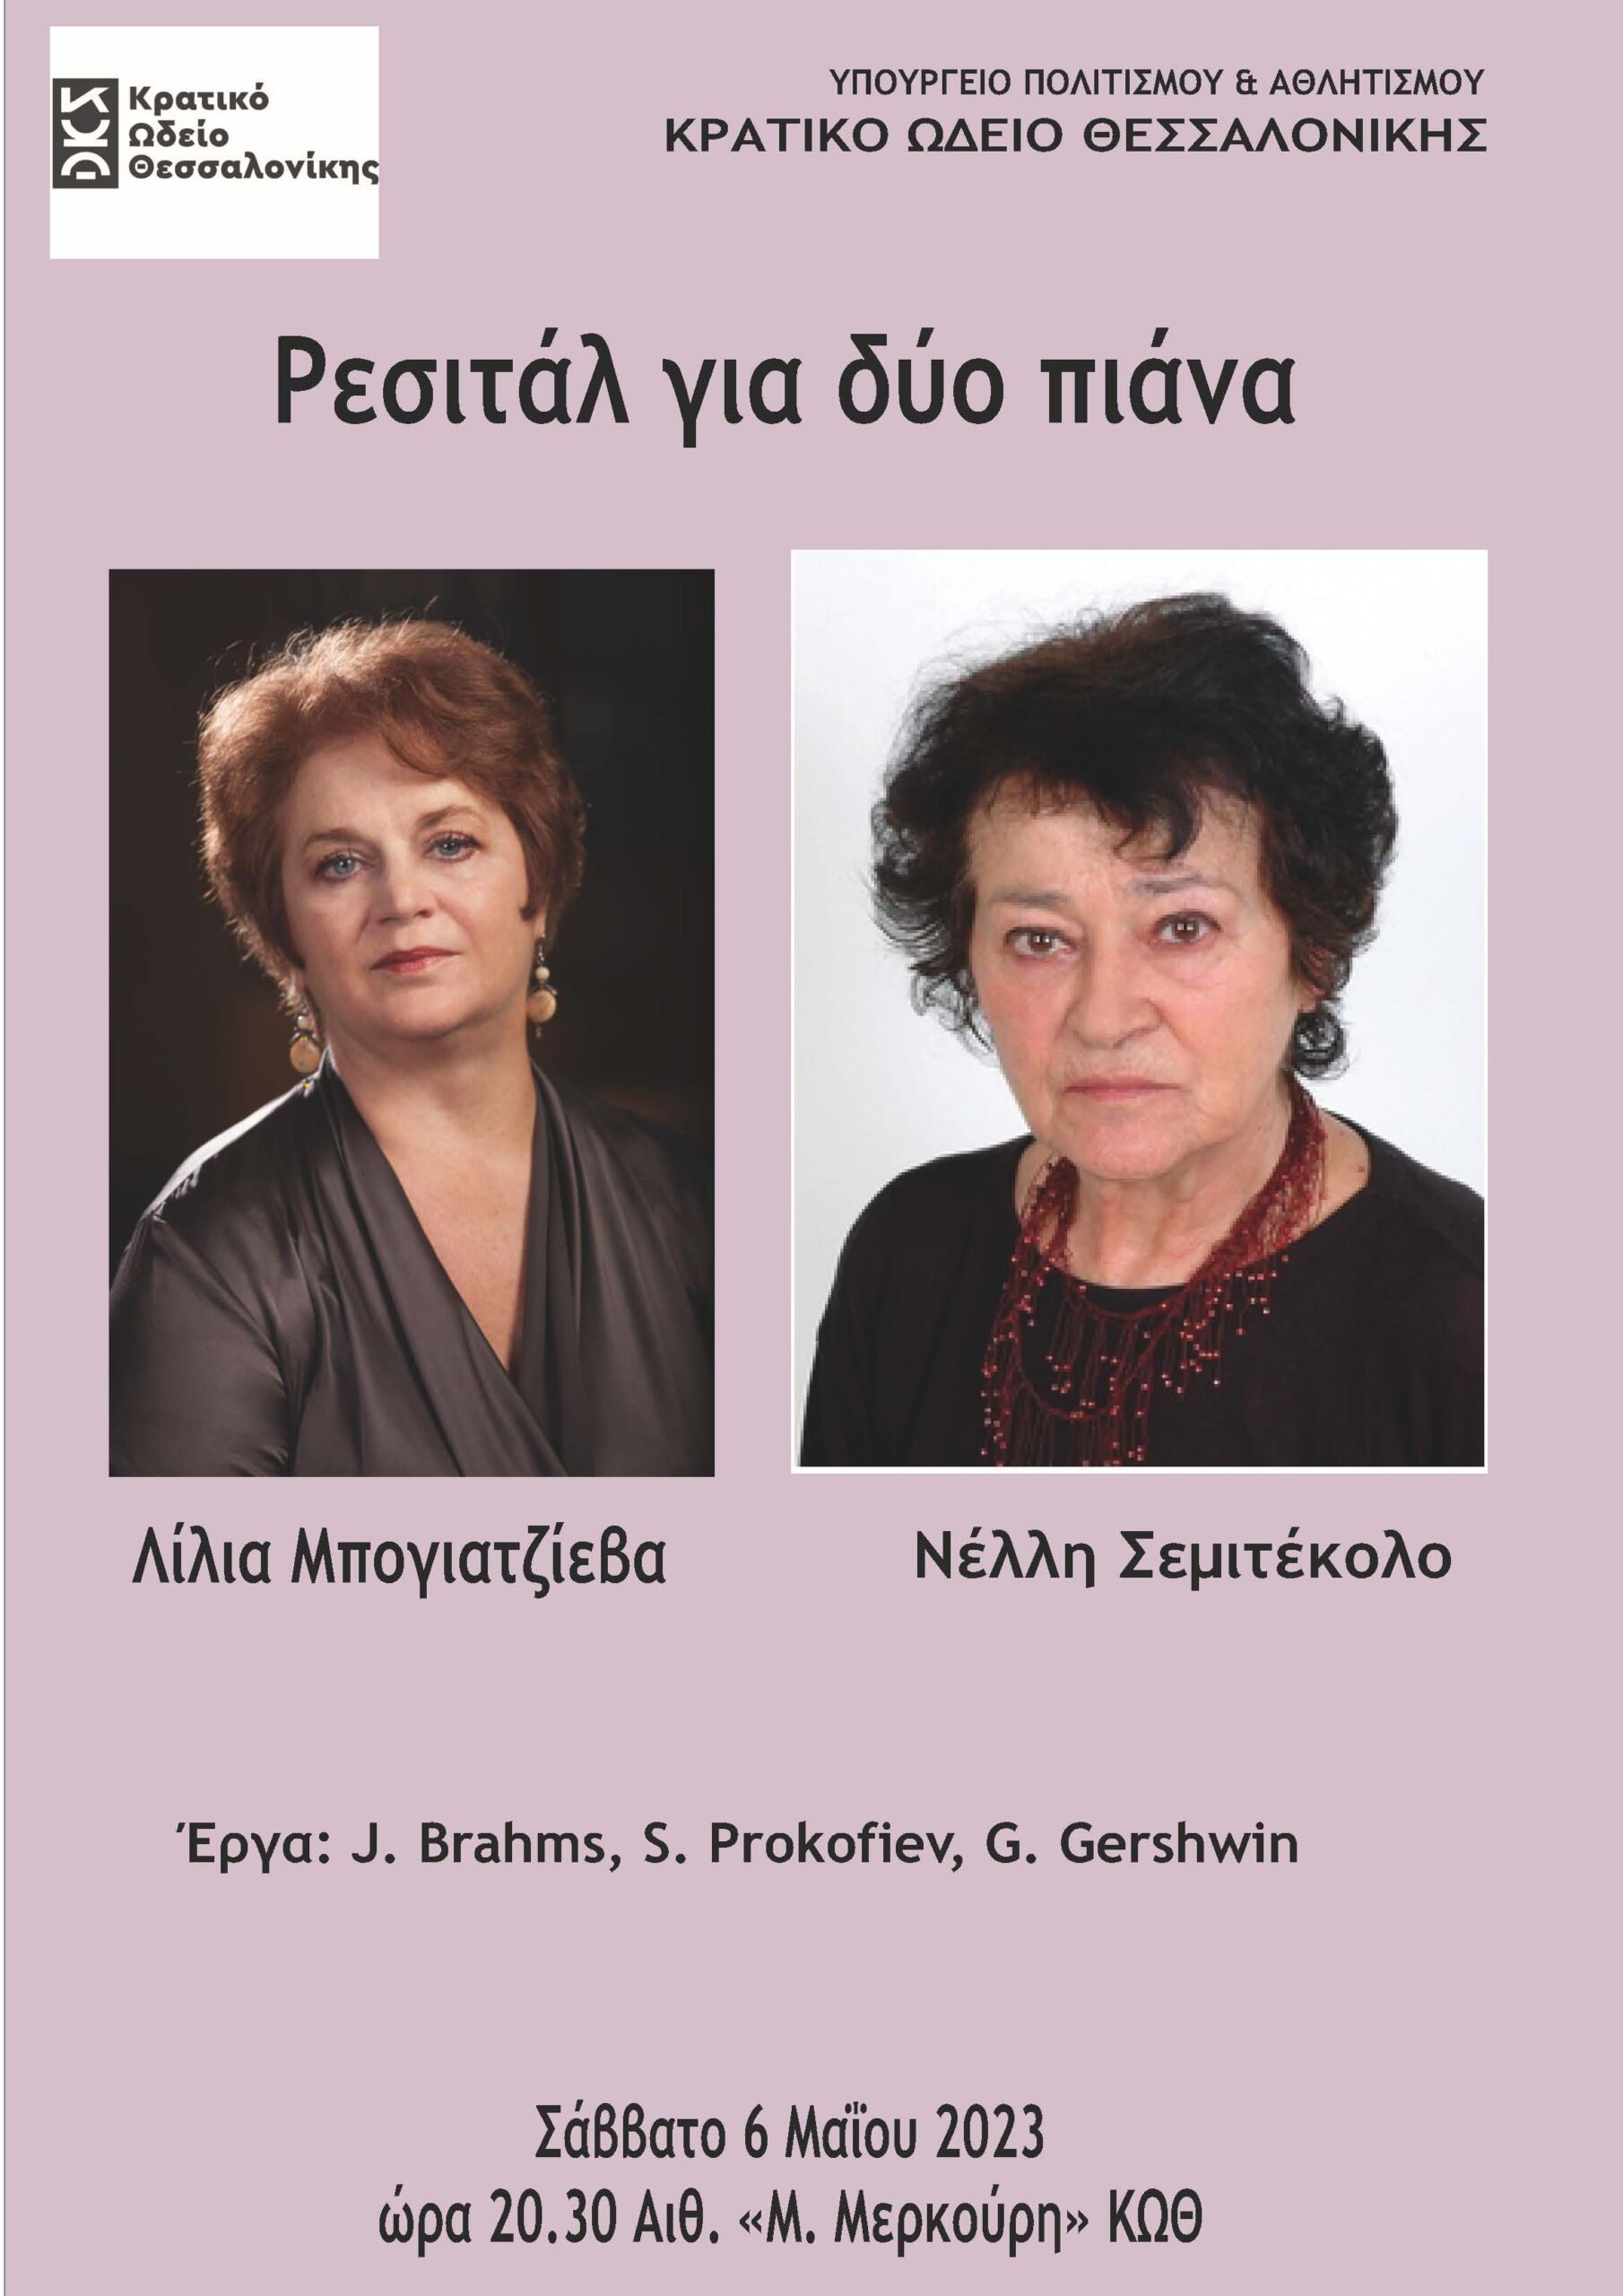 Ρεσιτάλ για 2 πιάνα με τις Νέλλη Σεμιτέκολο & Λίλη Μπογιατζίεβα